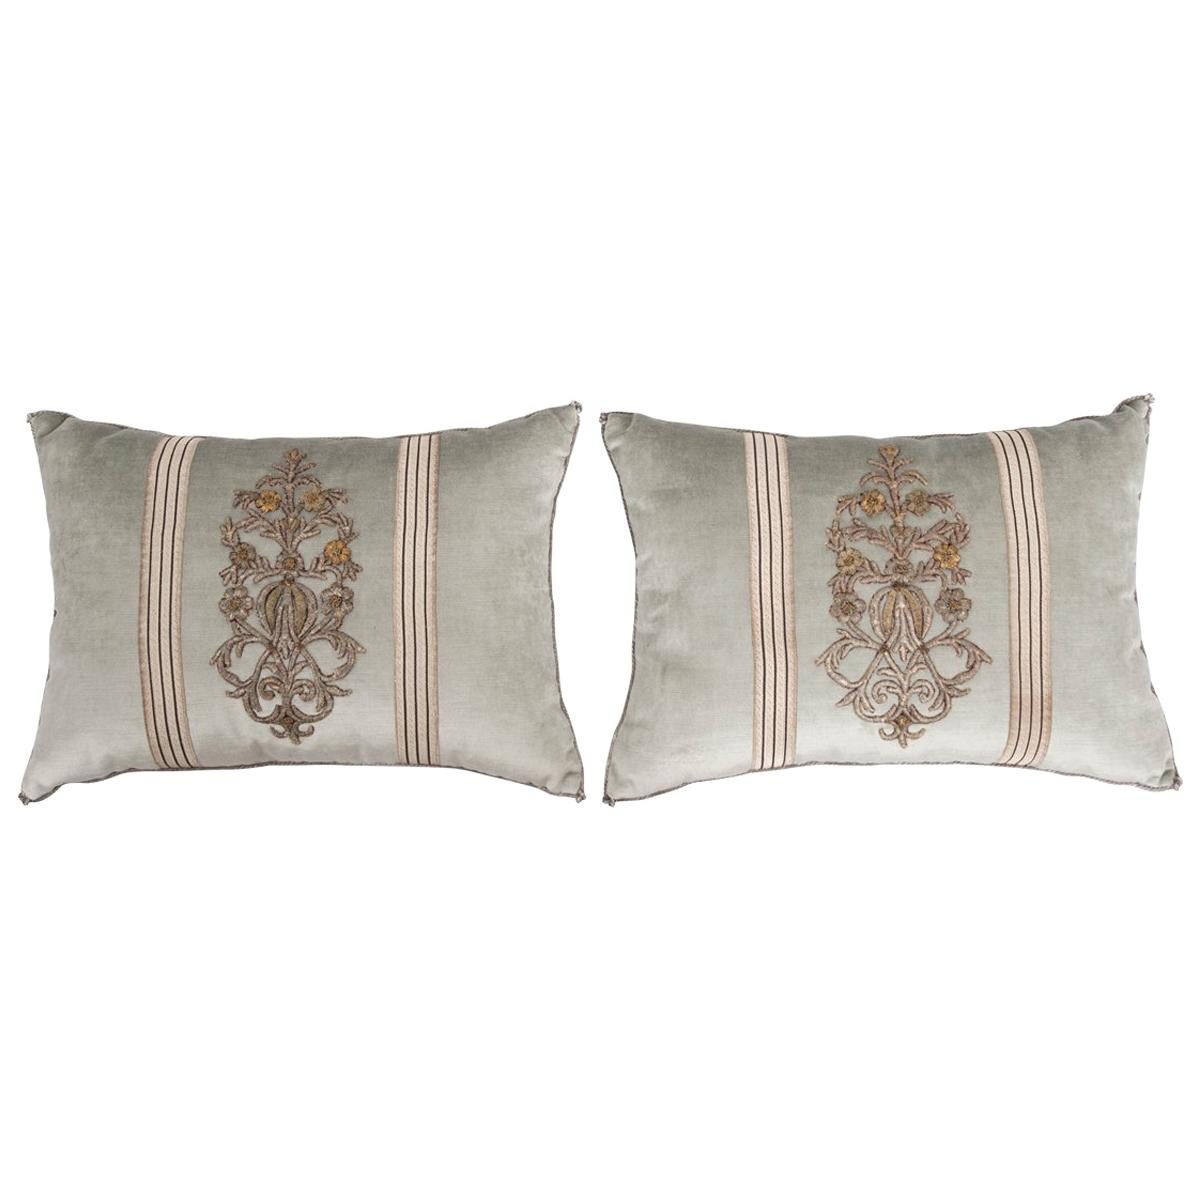 Antique Textile Pillows by B. Viz Design